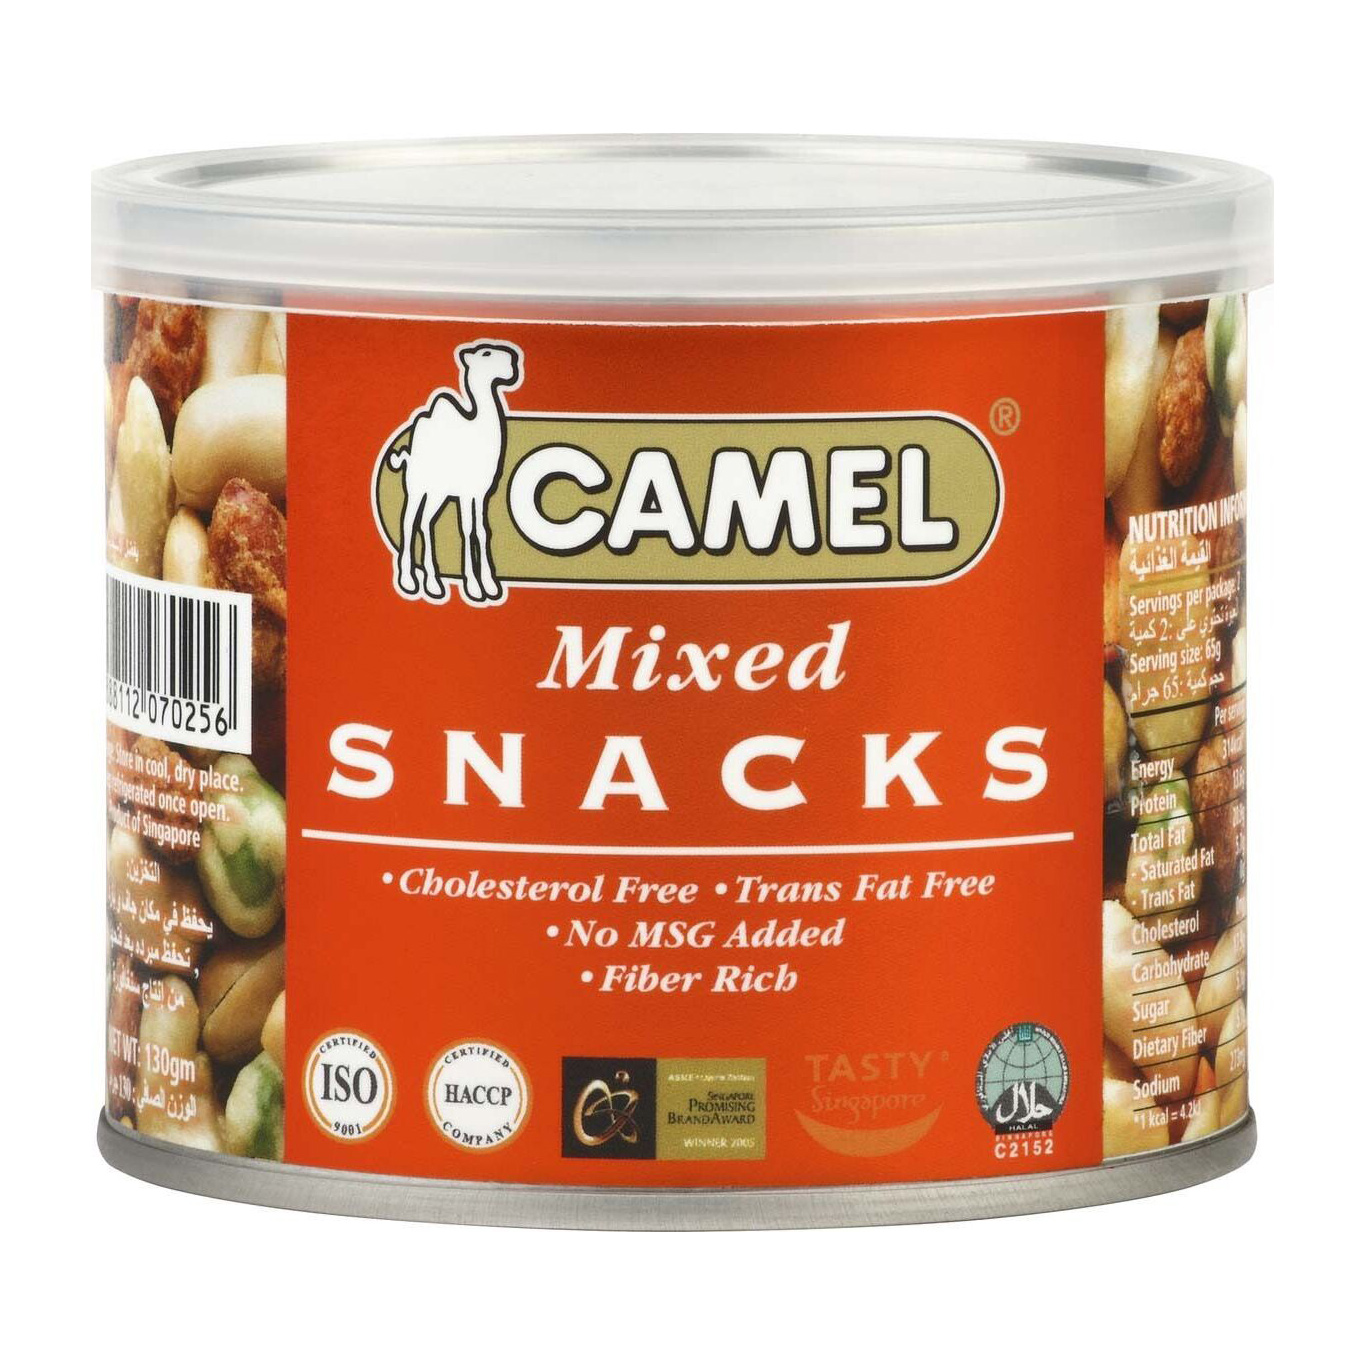 Смесь Camel из различных орехов, бобов, горошка Mixed snacks 130 г смесь из орехов и бобов nikbionut с сушеными томатами владивосток 130 г